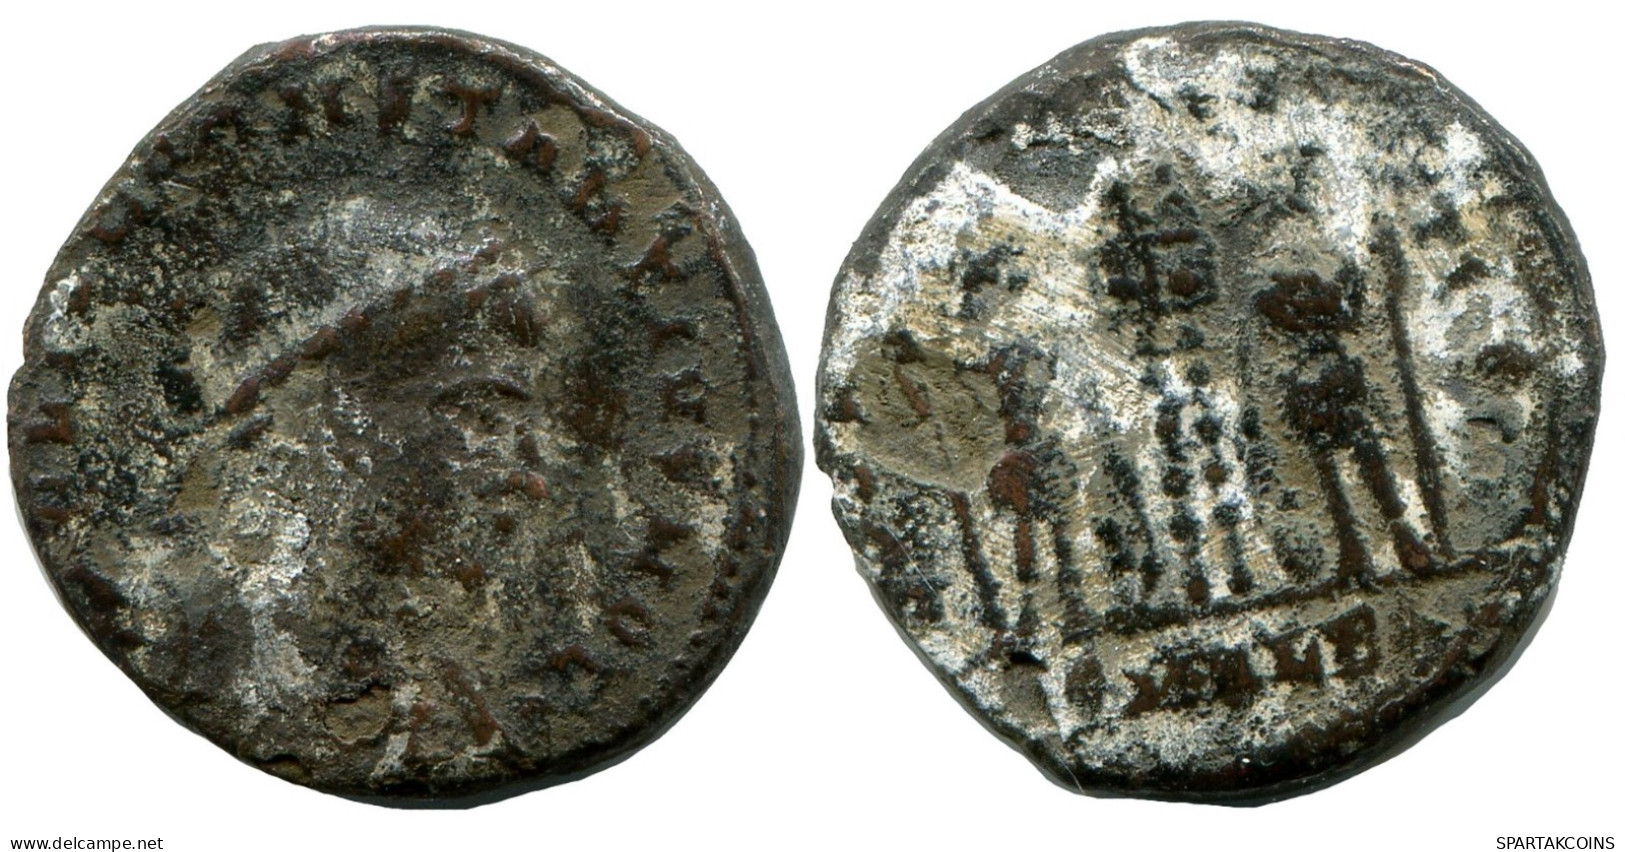 CONSTANTIUS II MINTED IN ALEKSANDRIA FOUND IN IHNASYAH HOARD #ANC10446.14.U.A - Der Christlischen Kaiser (307 / 363)